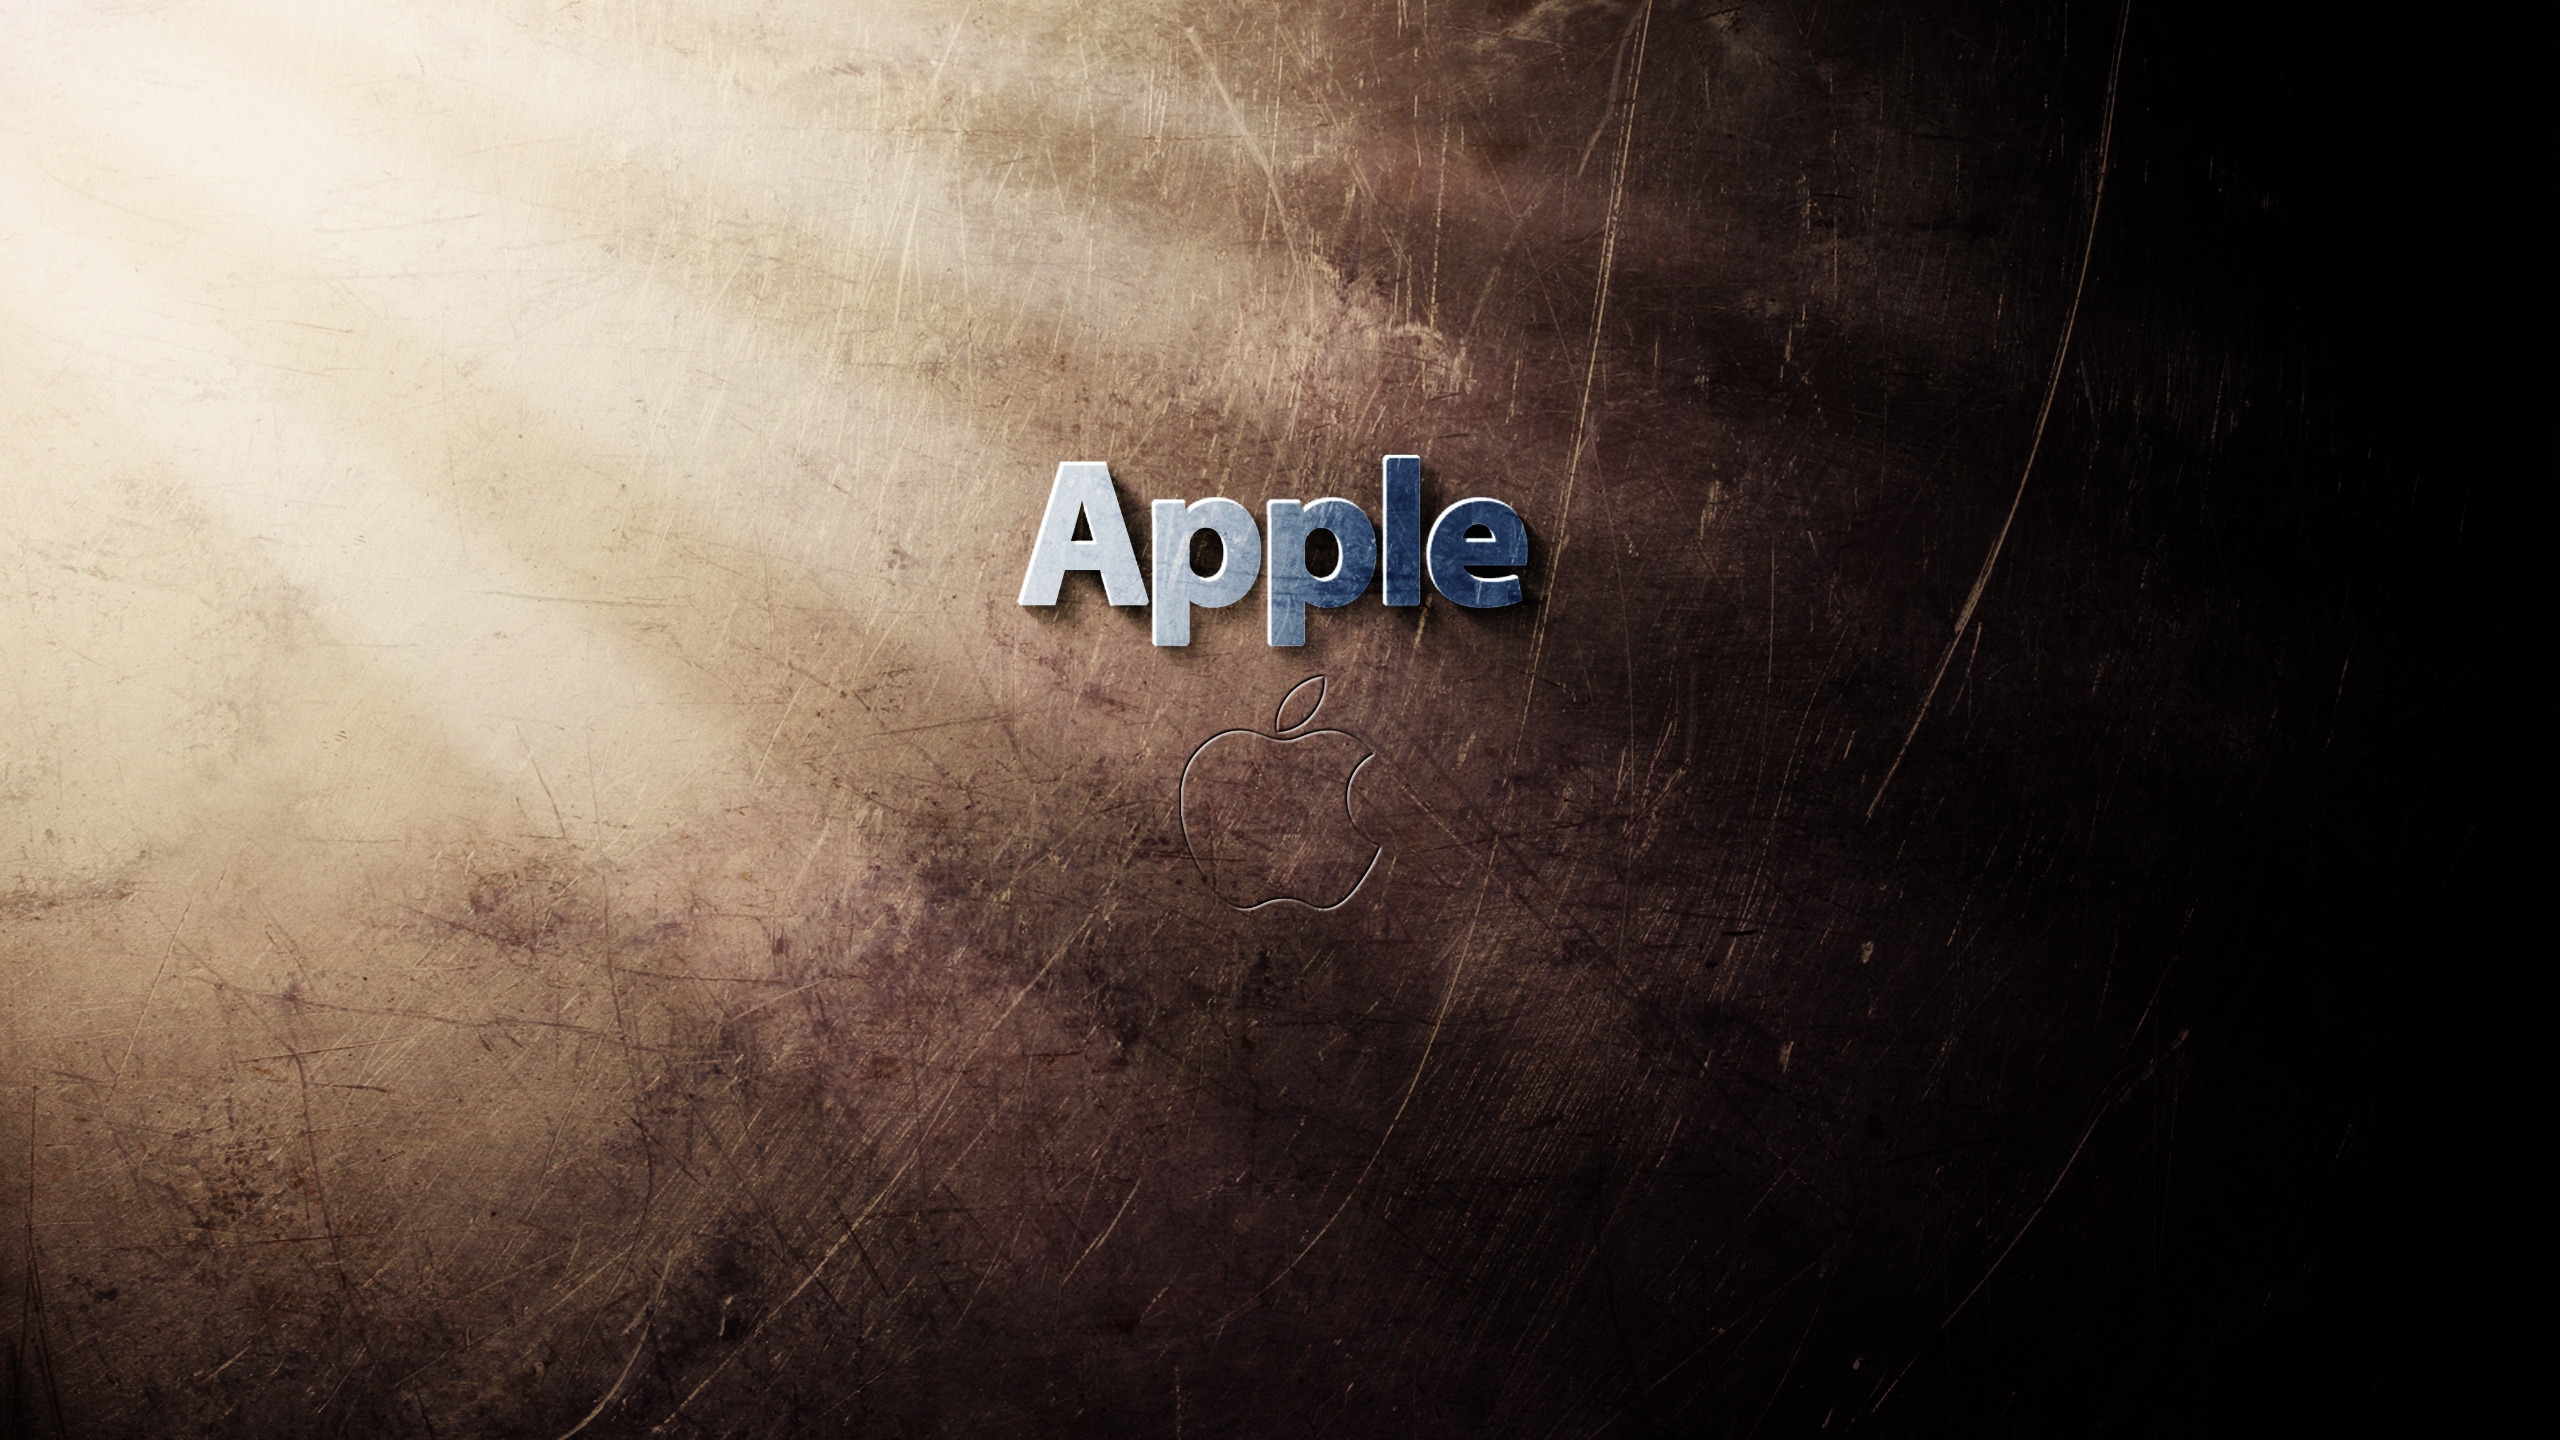 Cool Apple Logo for 2560x1440 HDTV resolution